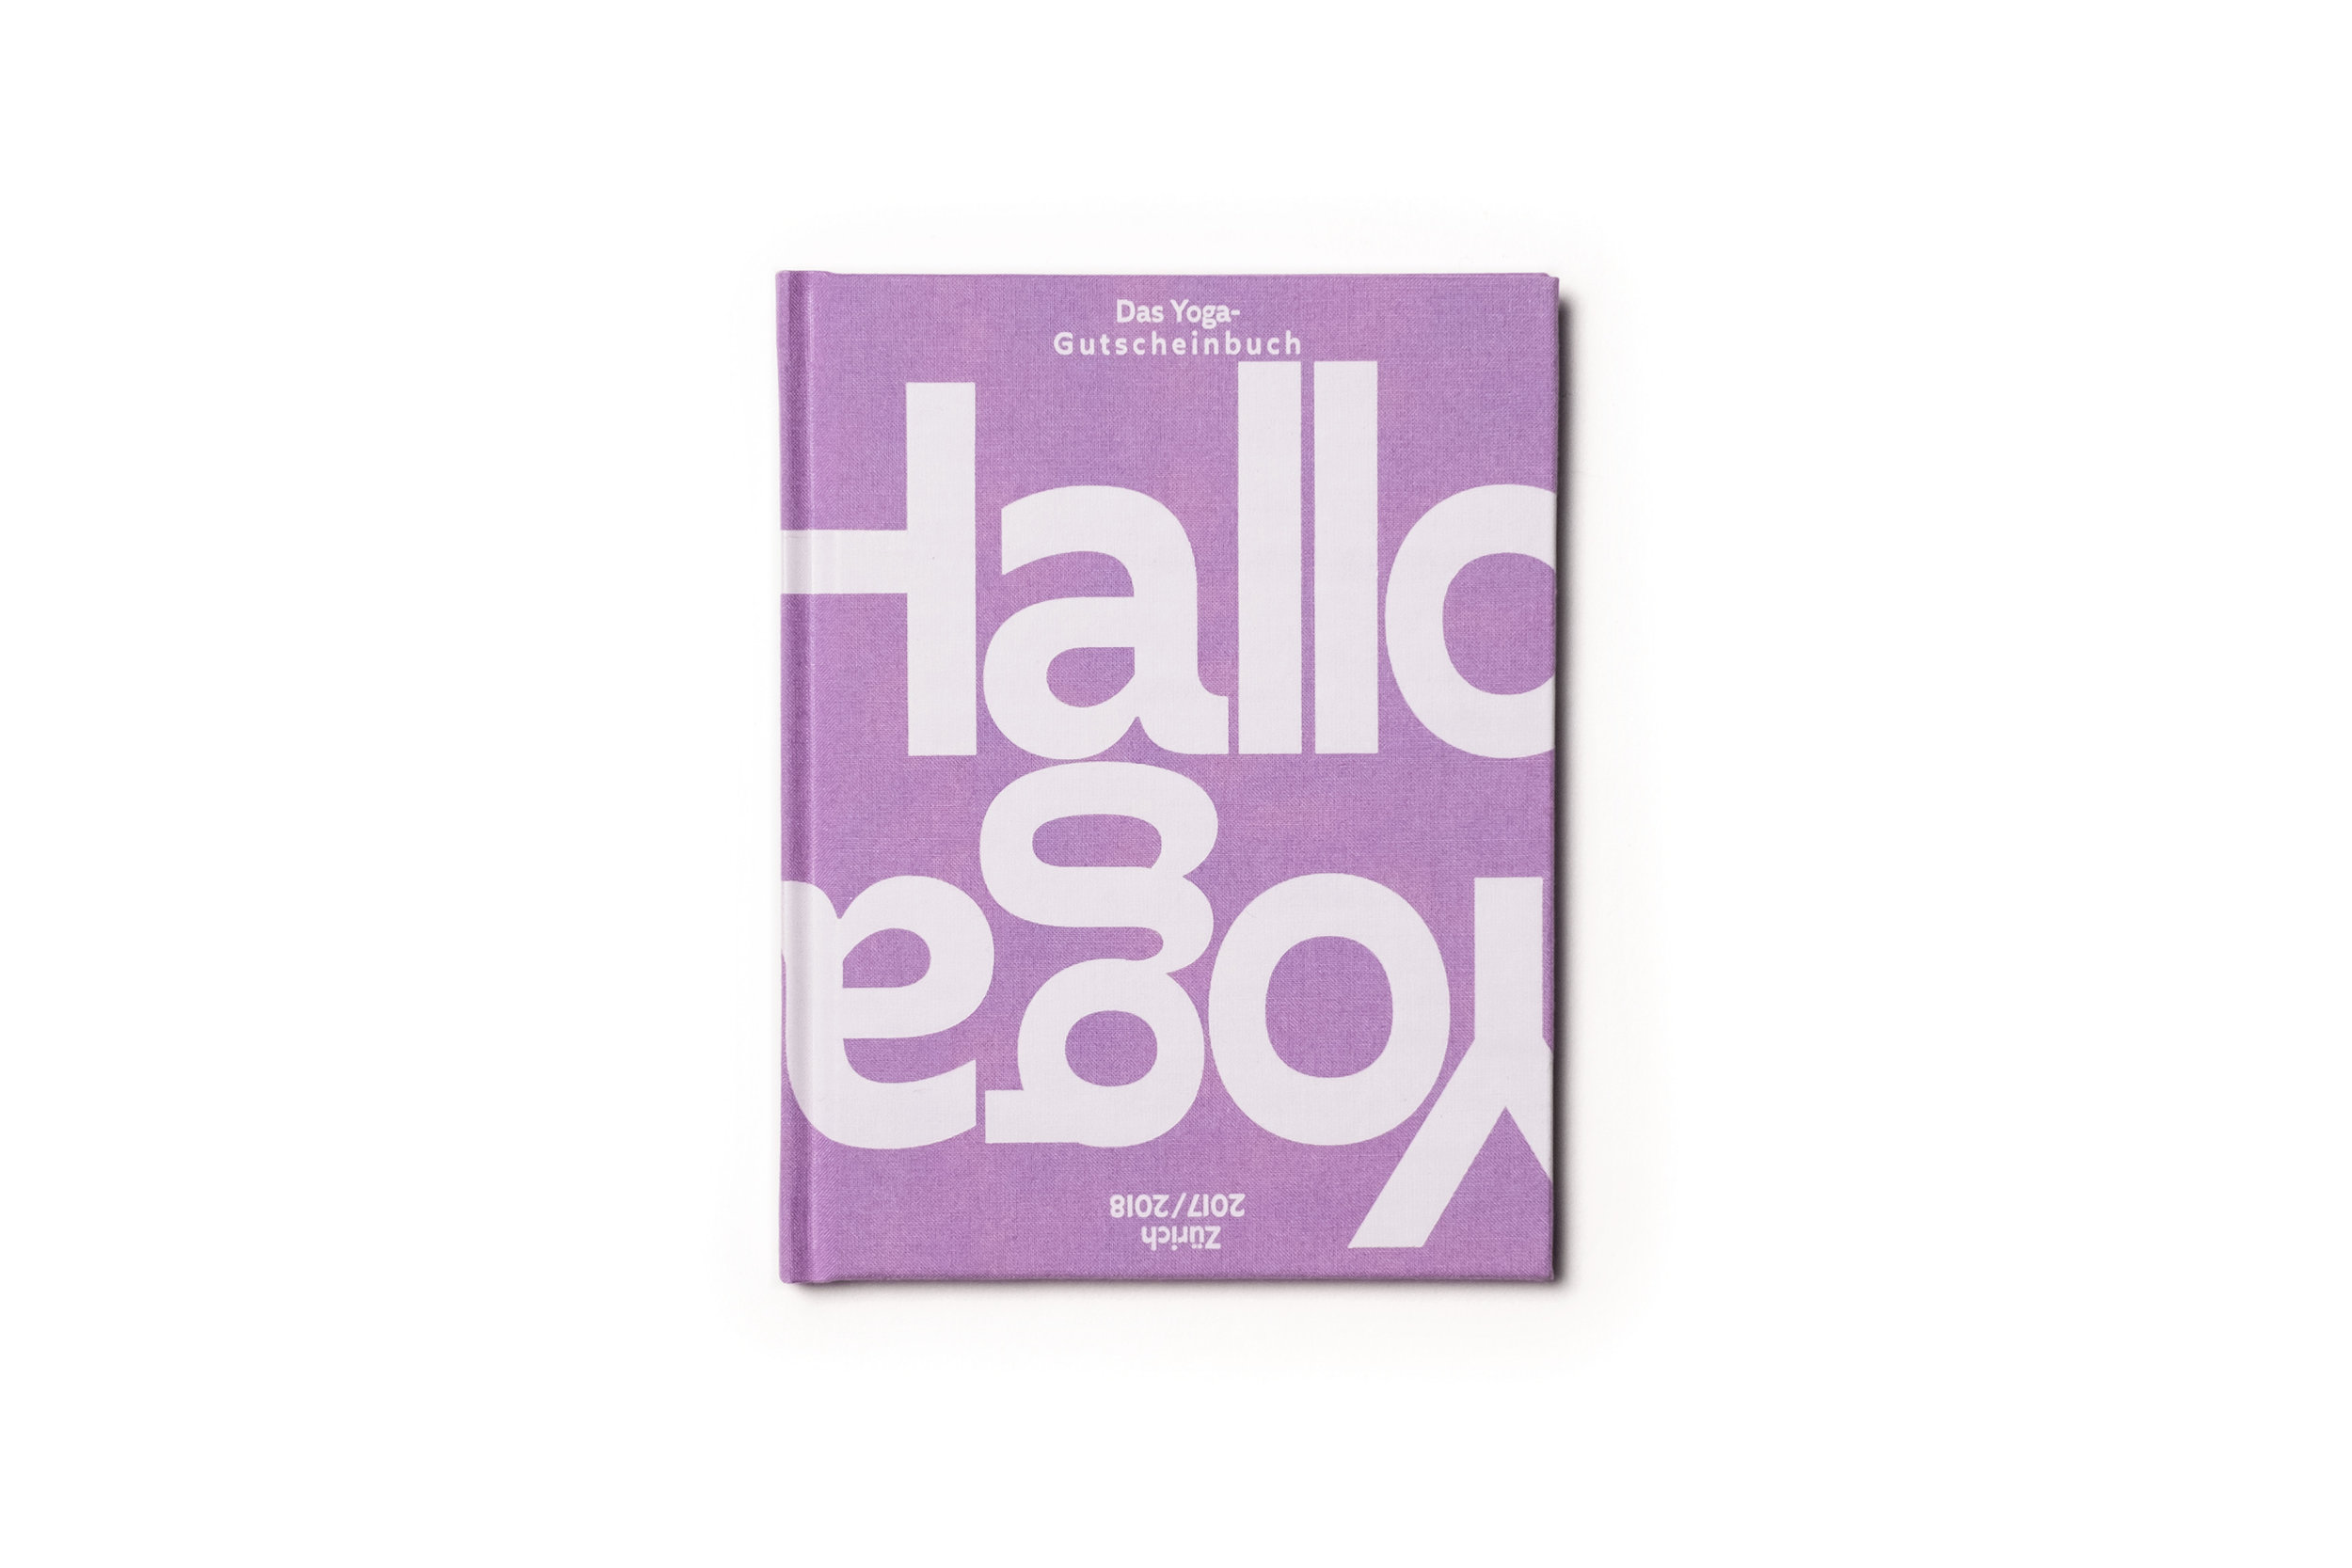 halloyoga2-cover-1.jpg